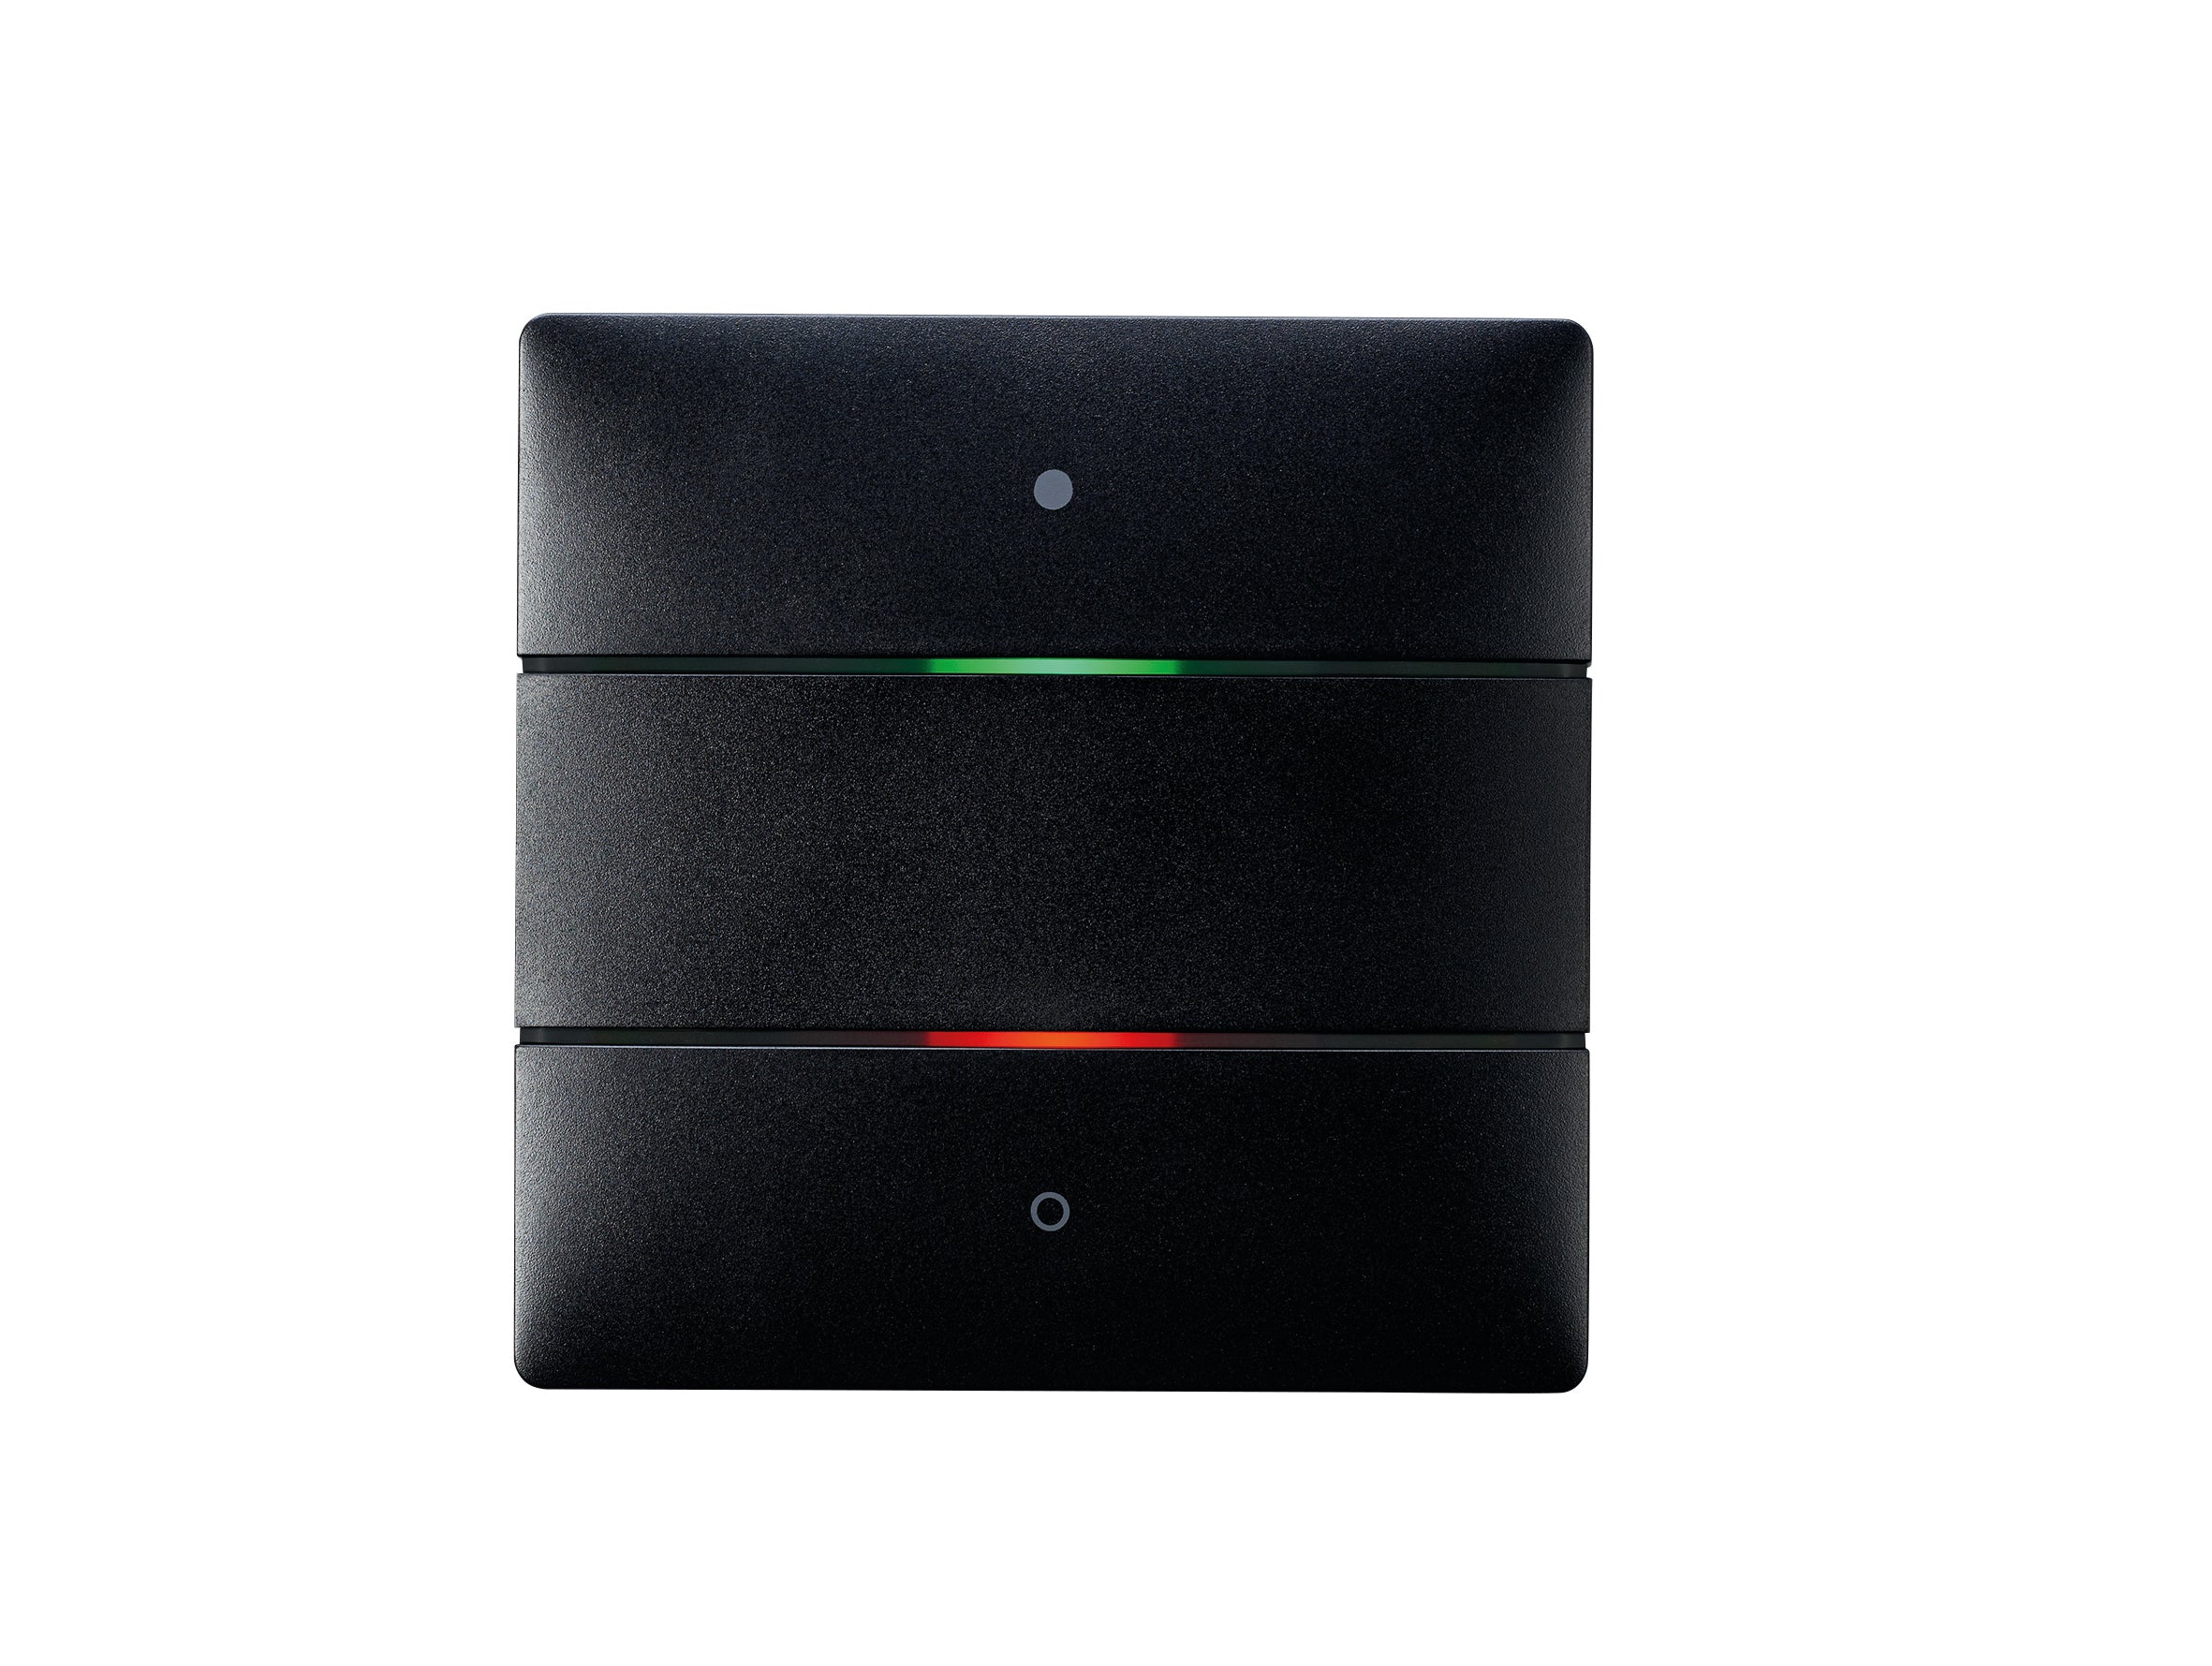 THEBEN LUXORliving-Tastsensor mit 2 Tasten und 2 Status-LEDs, integrierter Temperatursensor, Farbe schwarz